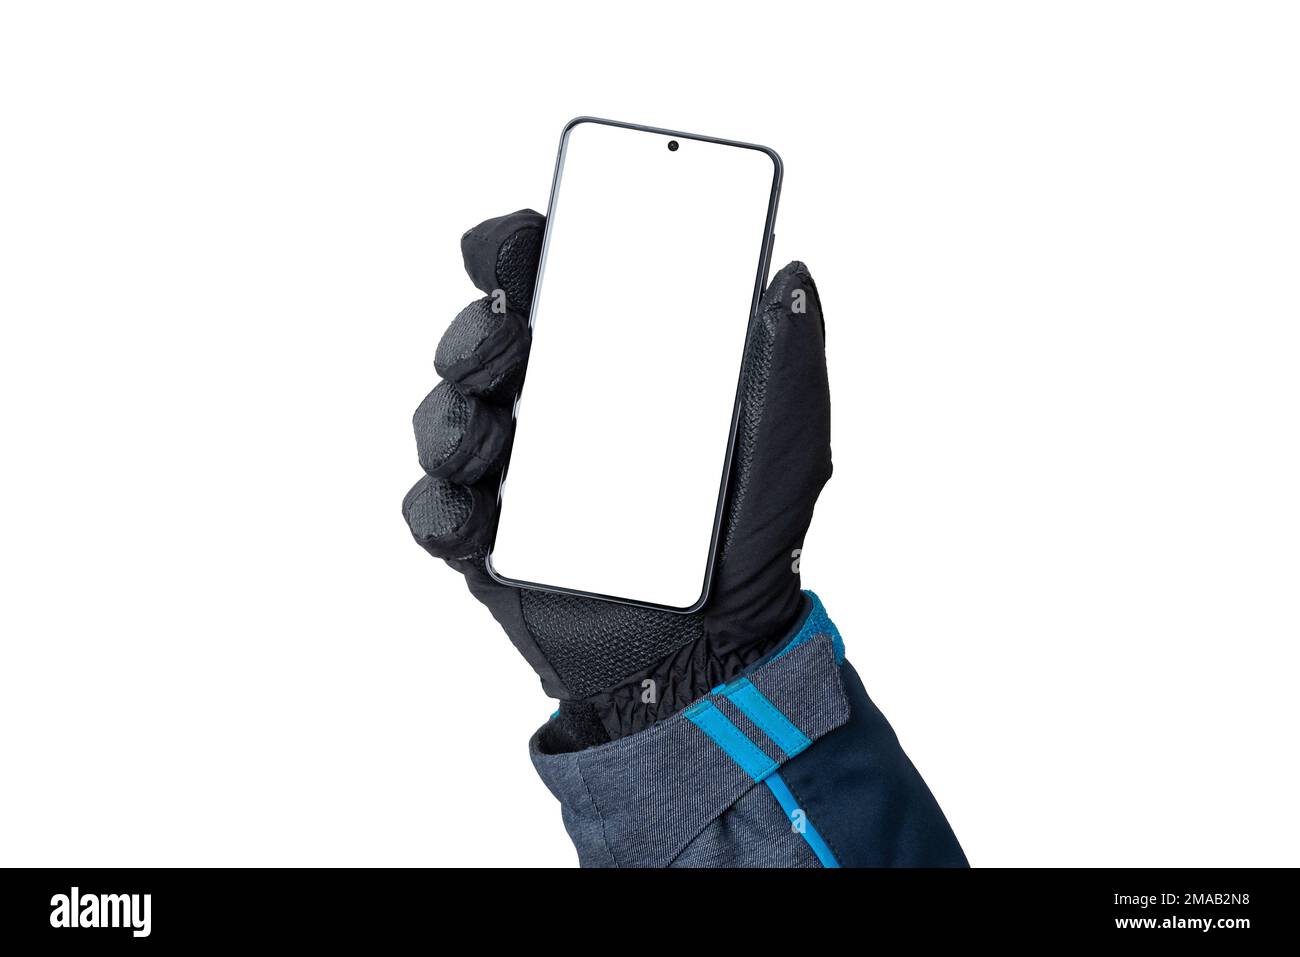 Die Hand mit dem Winterhandschuh zeigt ein Mobiltelefon. Isolierter Hintergrund und Anzeige für Modellerstellung, App-Präsentation und Winterumgebung Stockfoto